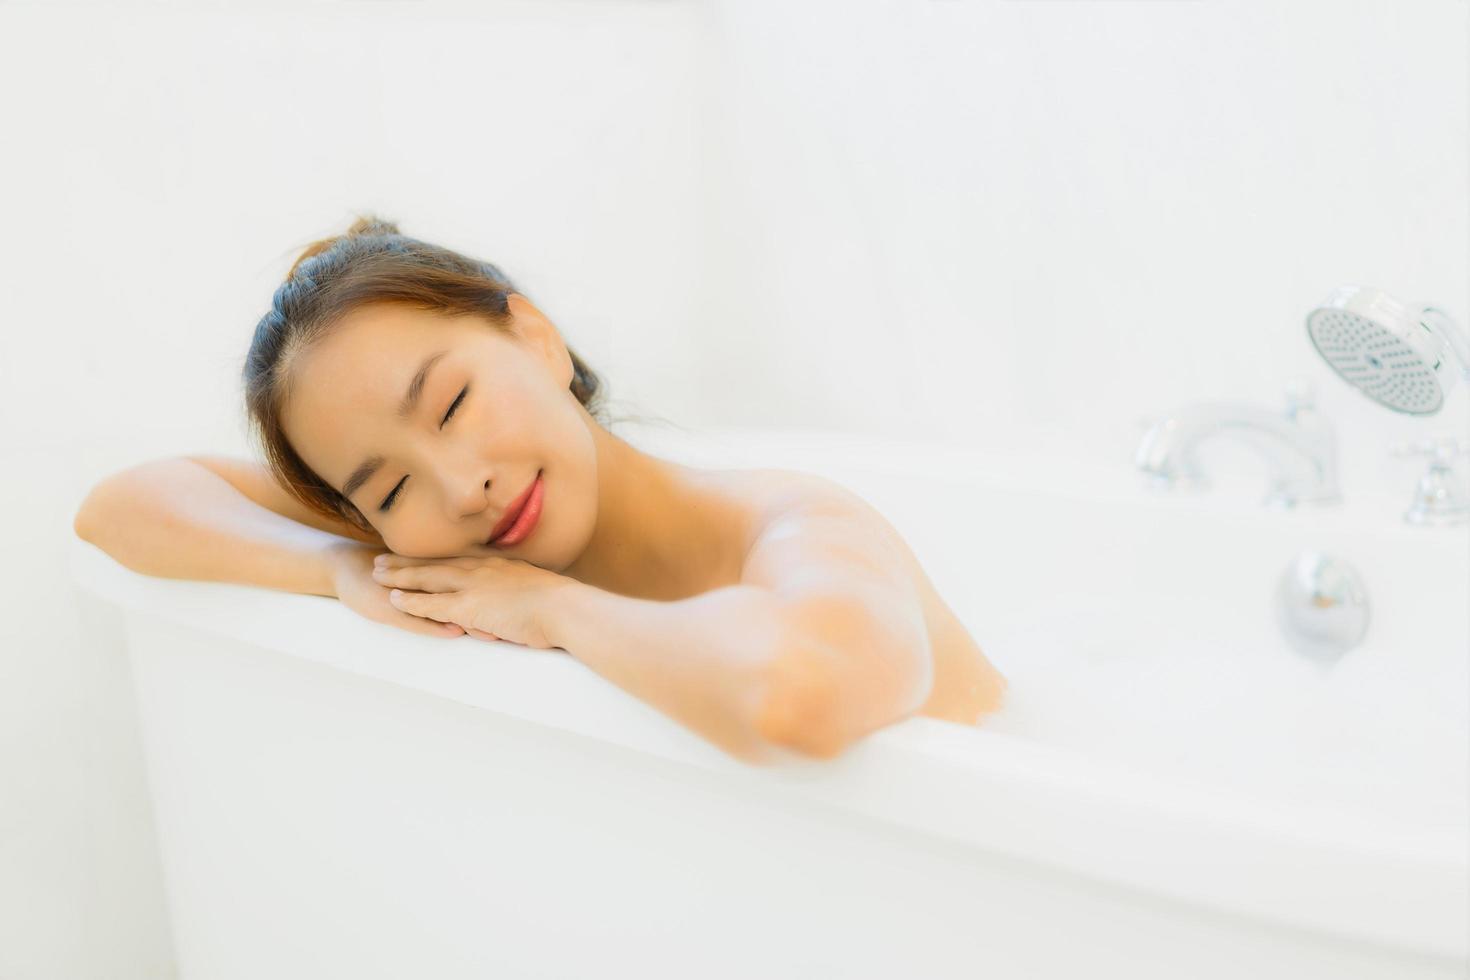 portret mooie jonge aziatische vrouw neemt een badkuip in de badkamer foto